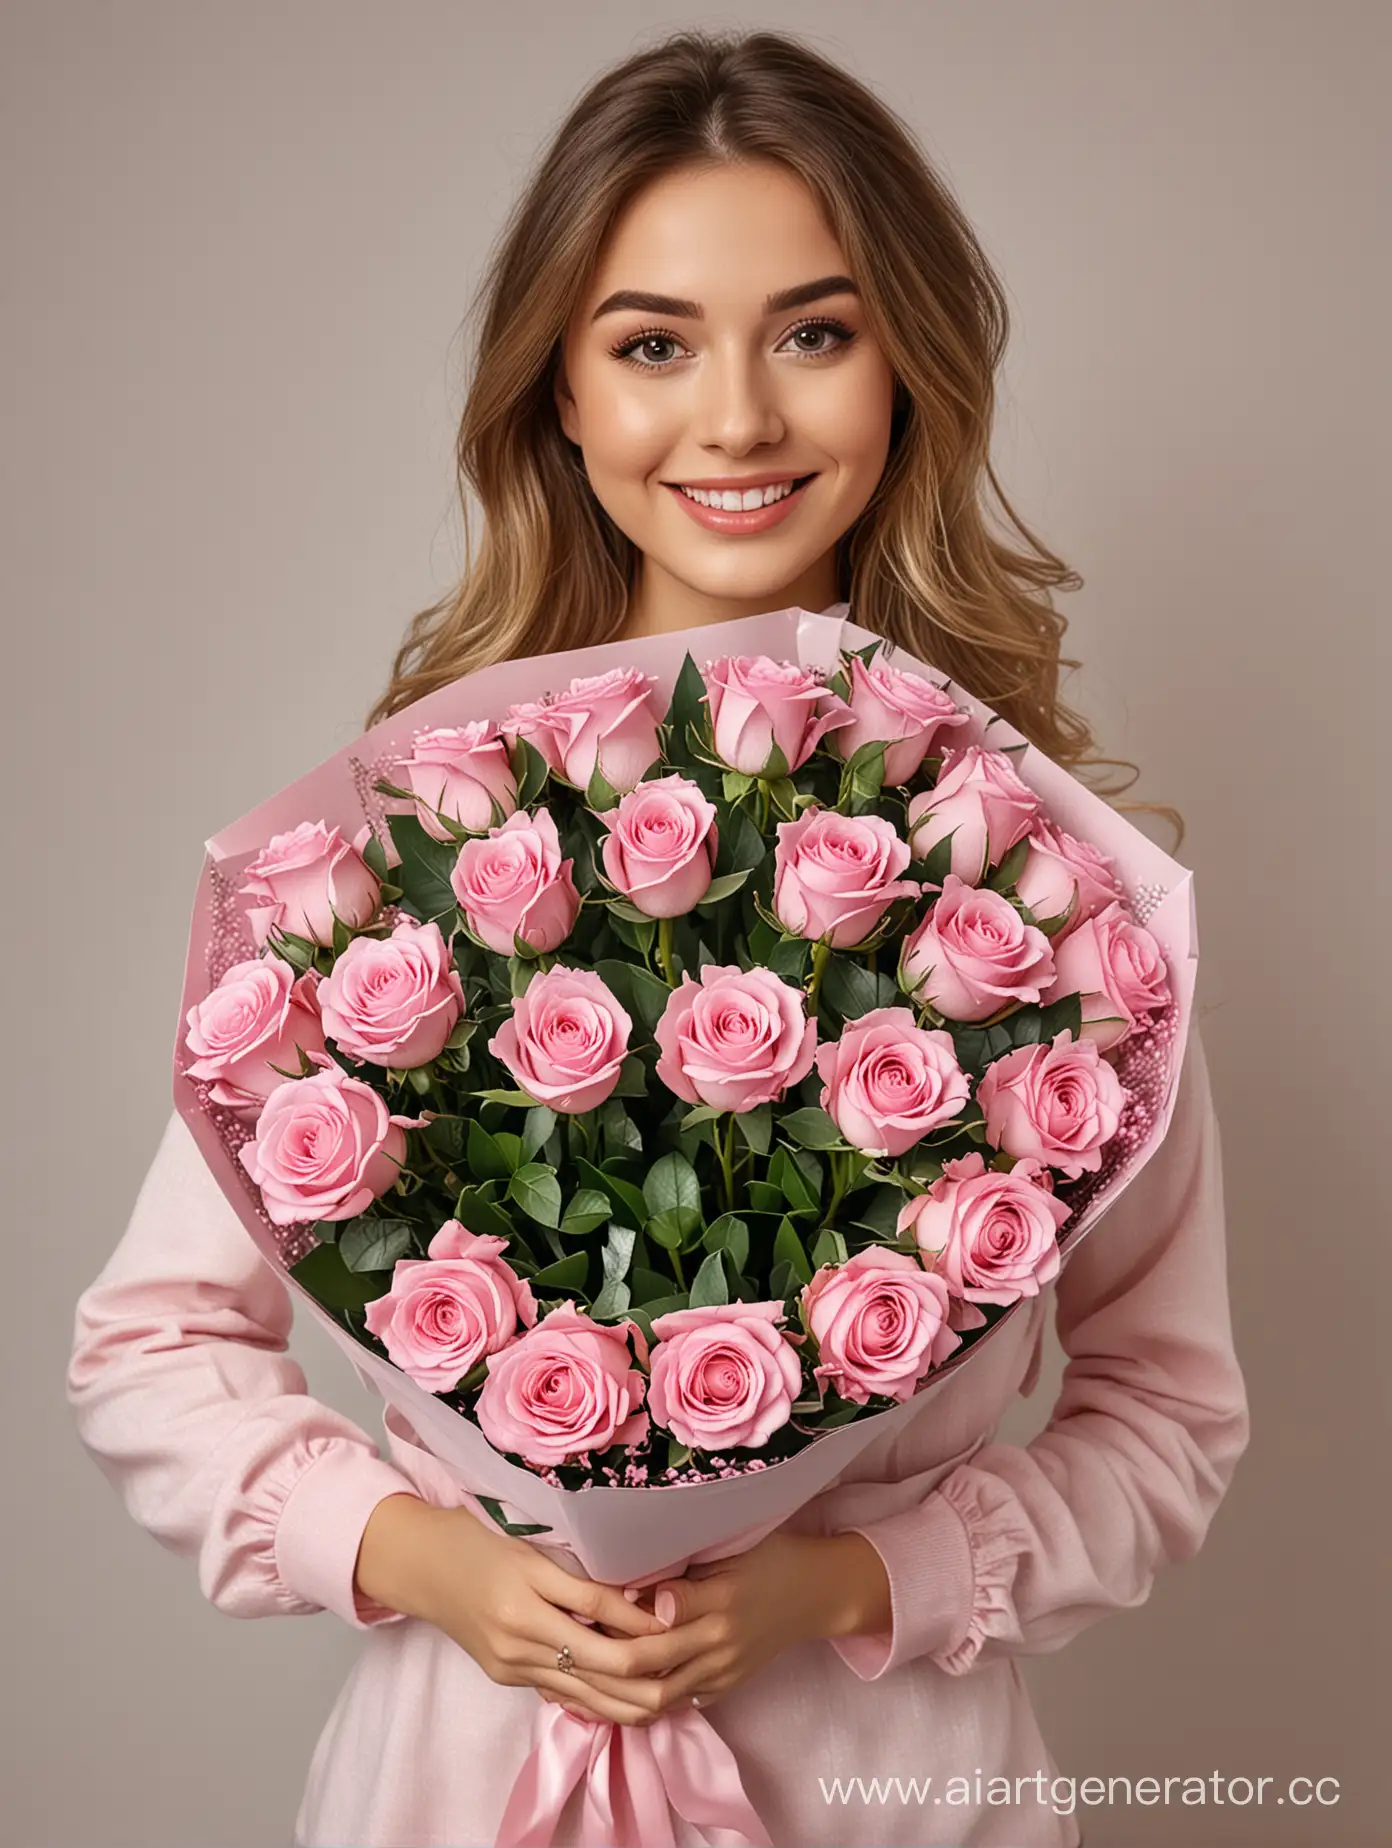 Фото реалистичное, на нем Красивая счастлива девушка с букетом цветов из 11 нежно розовых шикарных роз в упаковке, которые она показывает в кадр